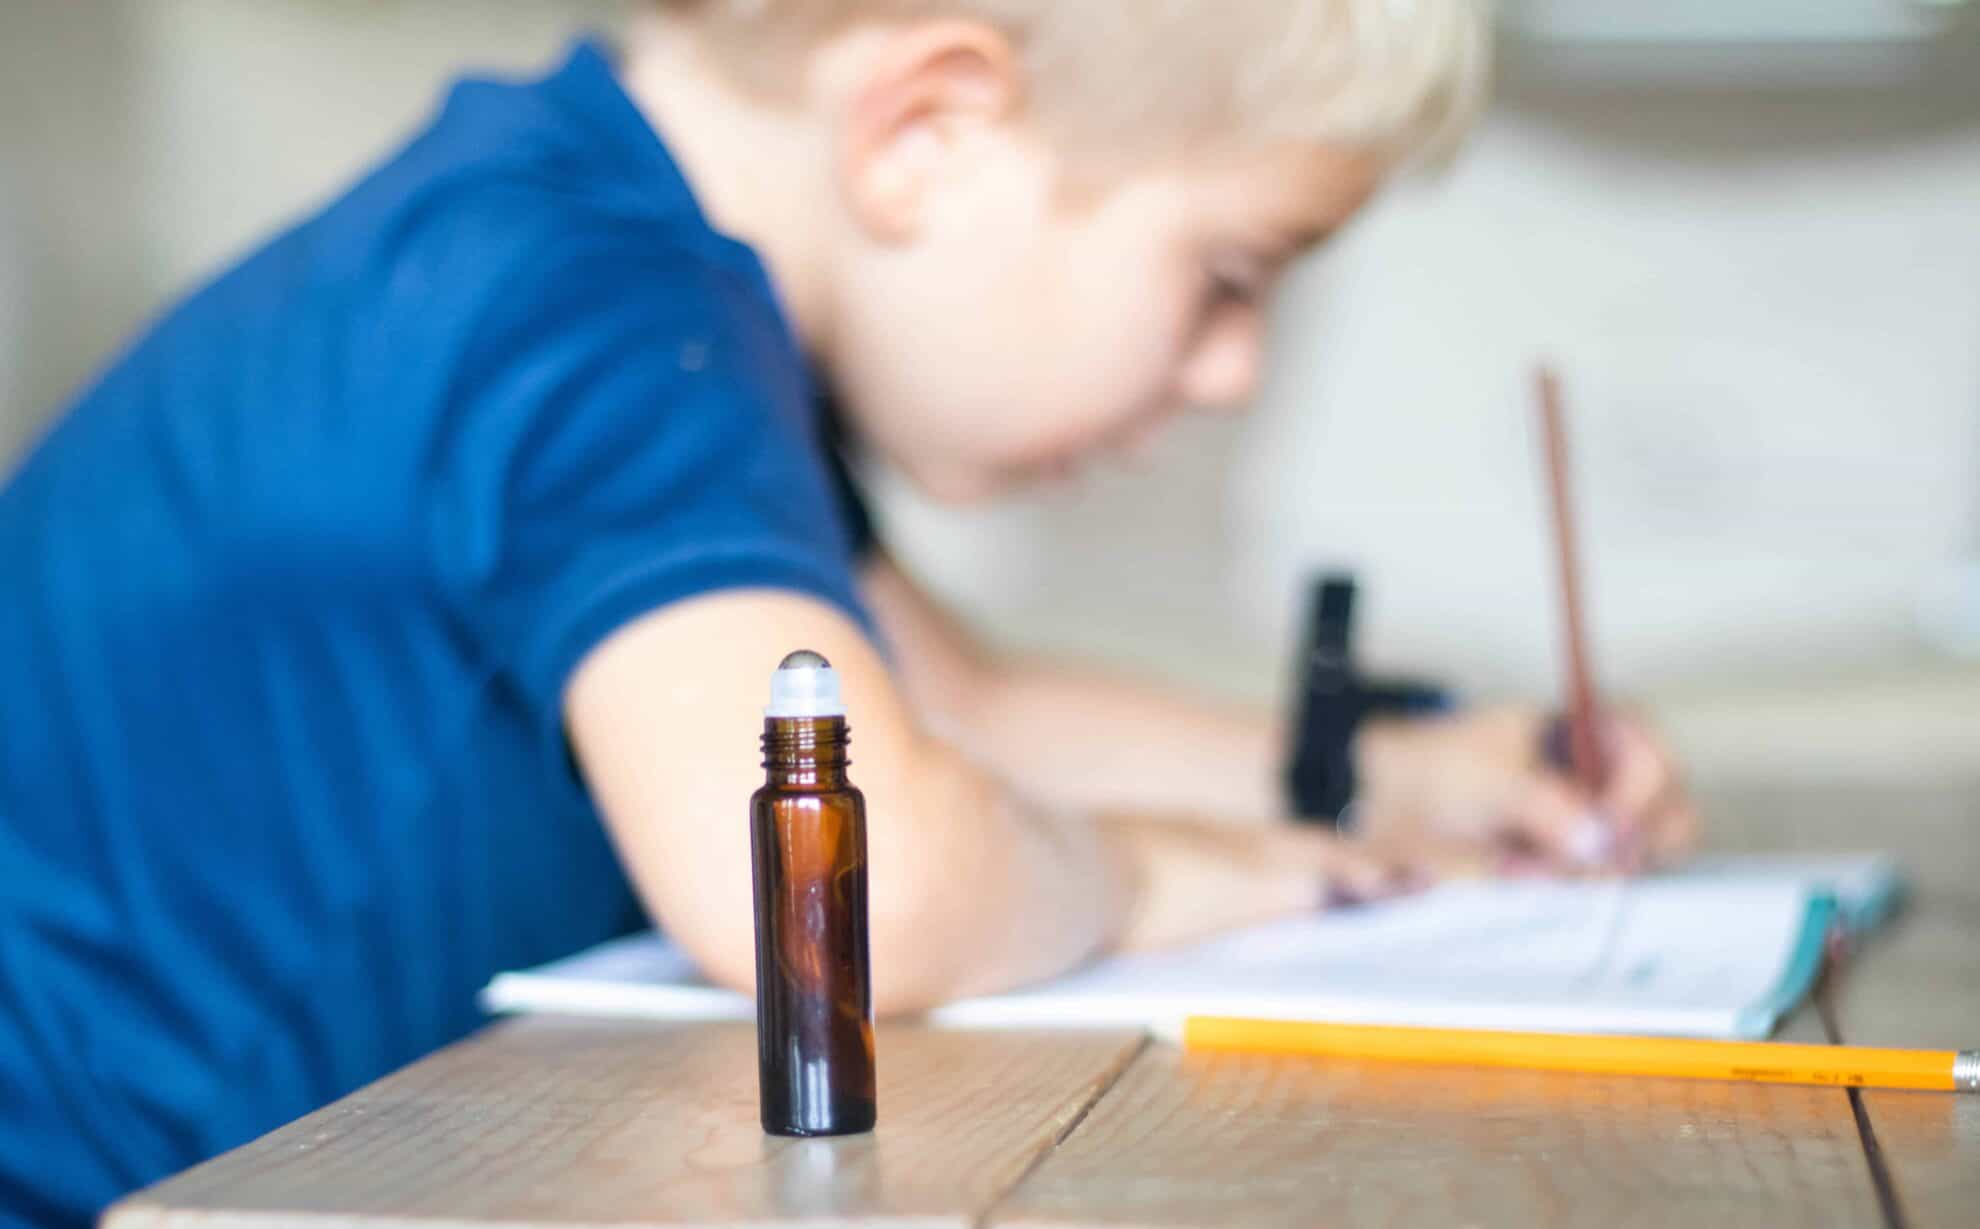 Roller bottle by little boy doing homework.